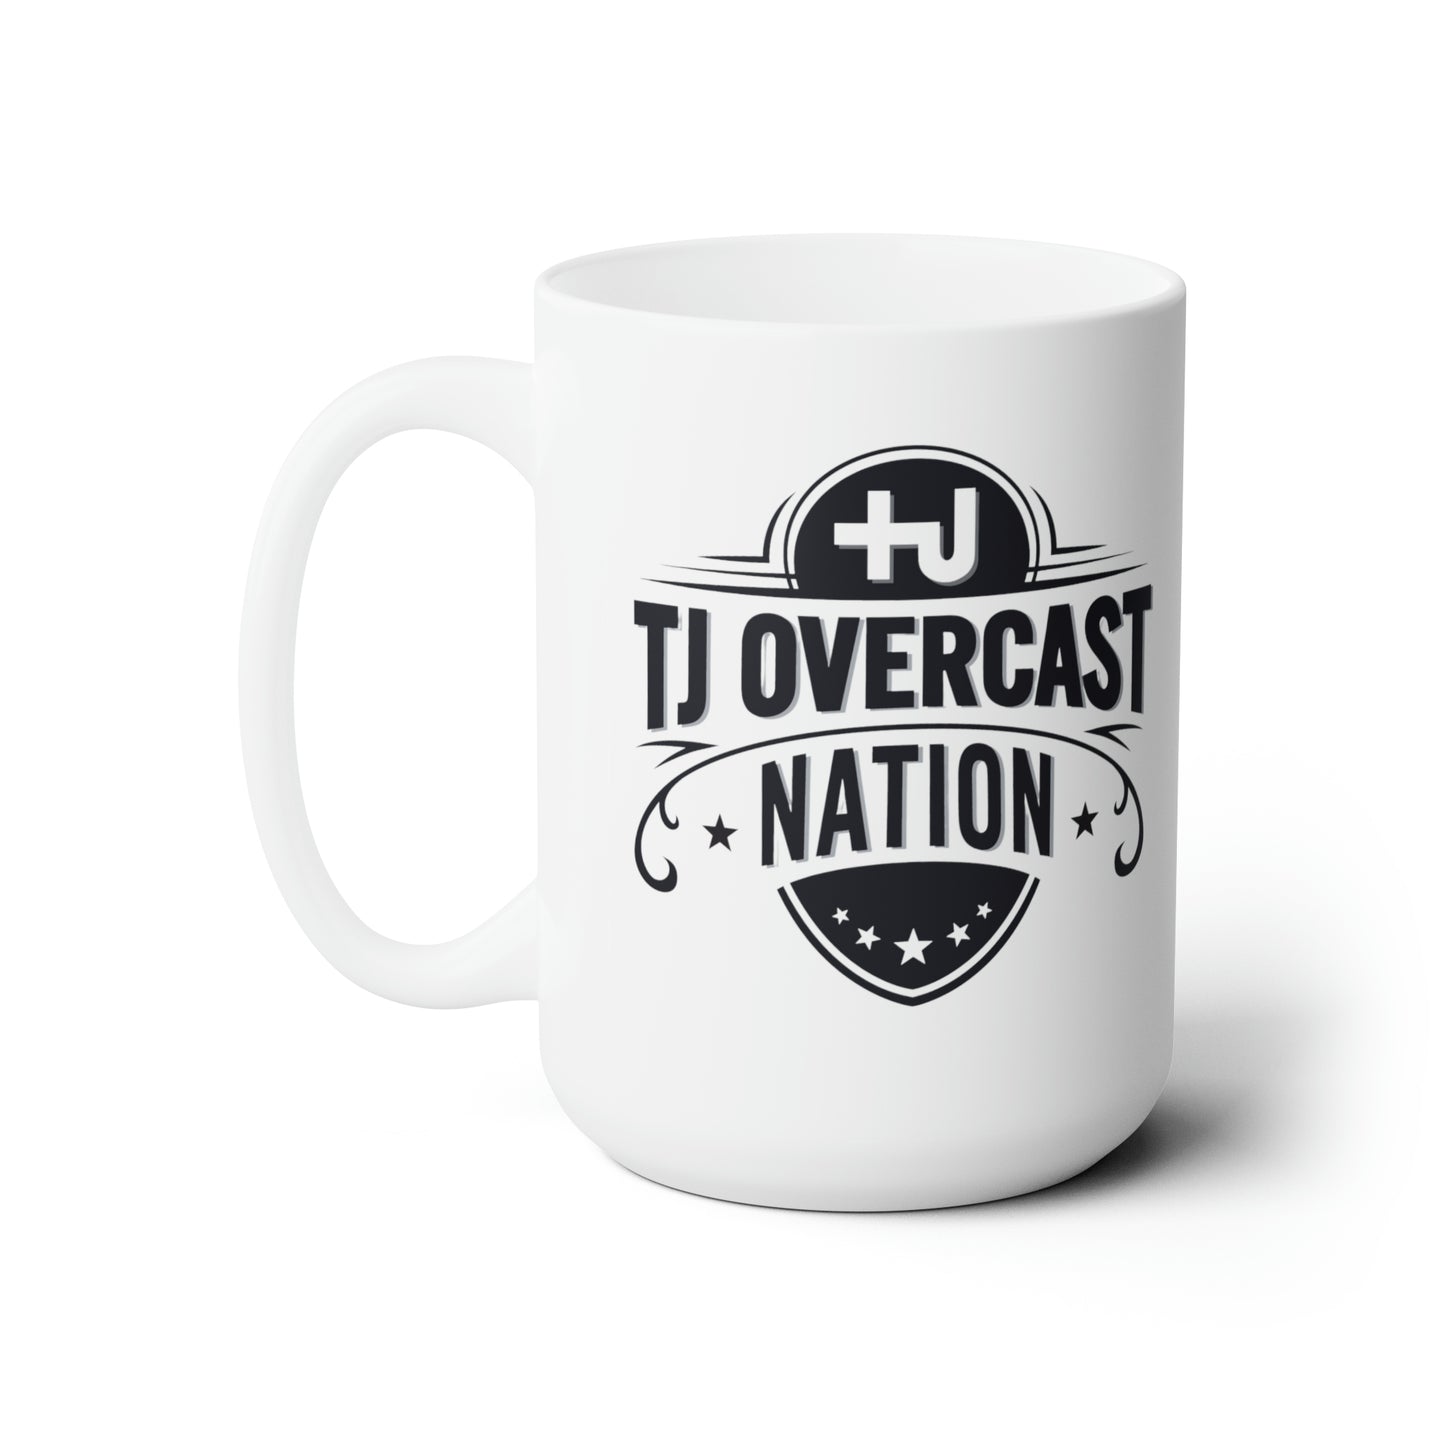 Tj Overcast Nation Ceramic Mug 15oz